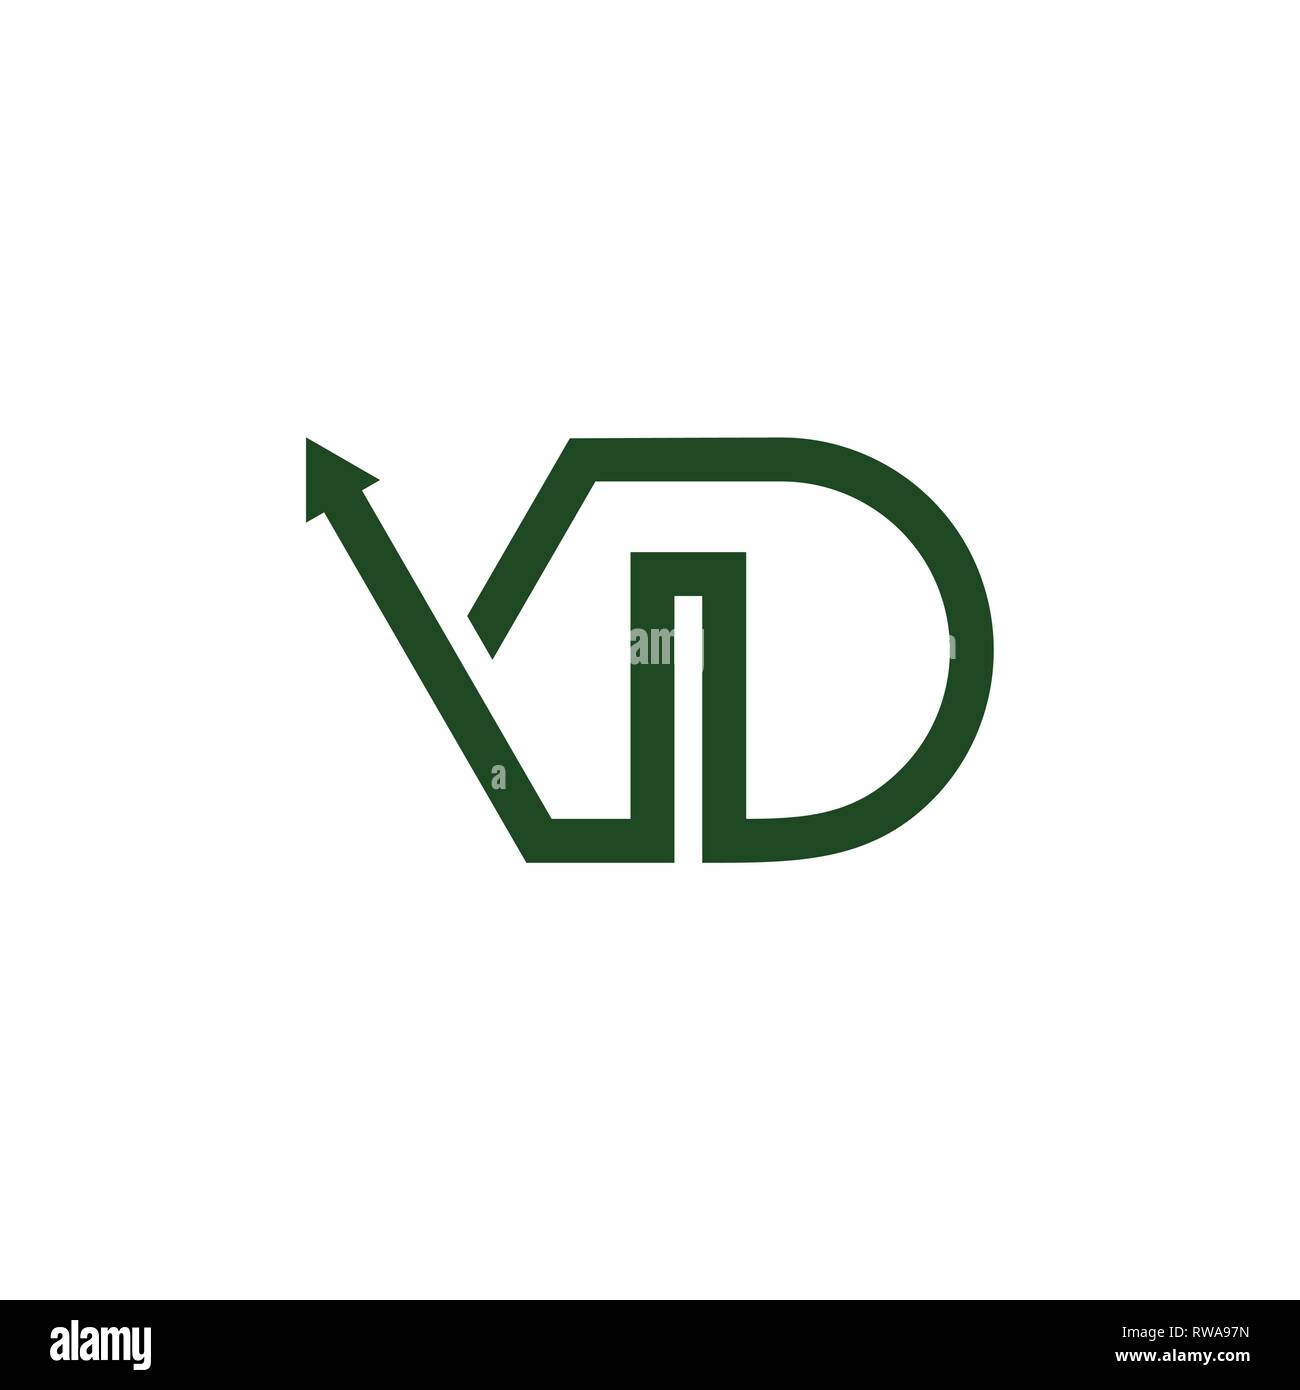 Briefe vd einfache geometrische Pfeillinie logo Vektor Stock Vektor